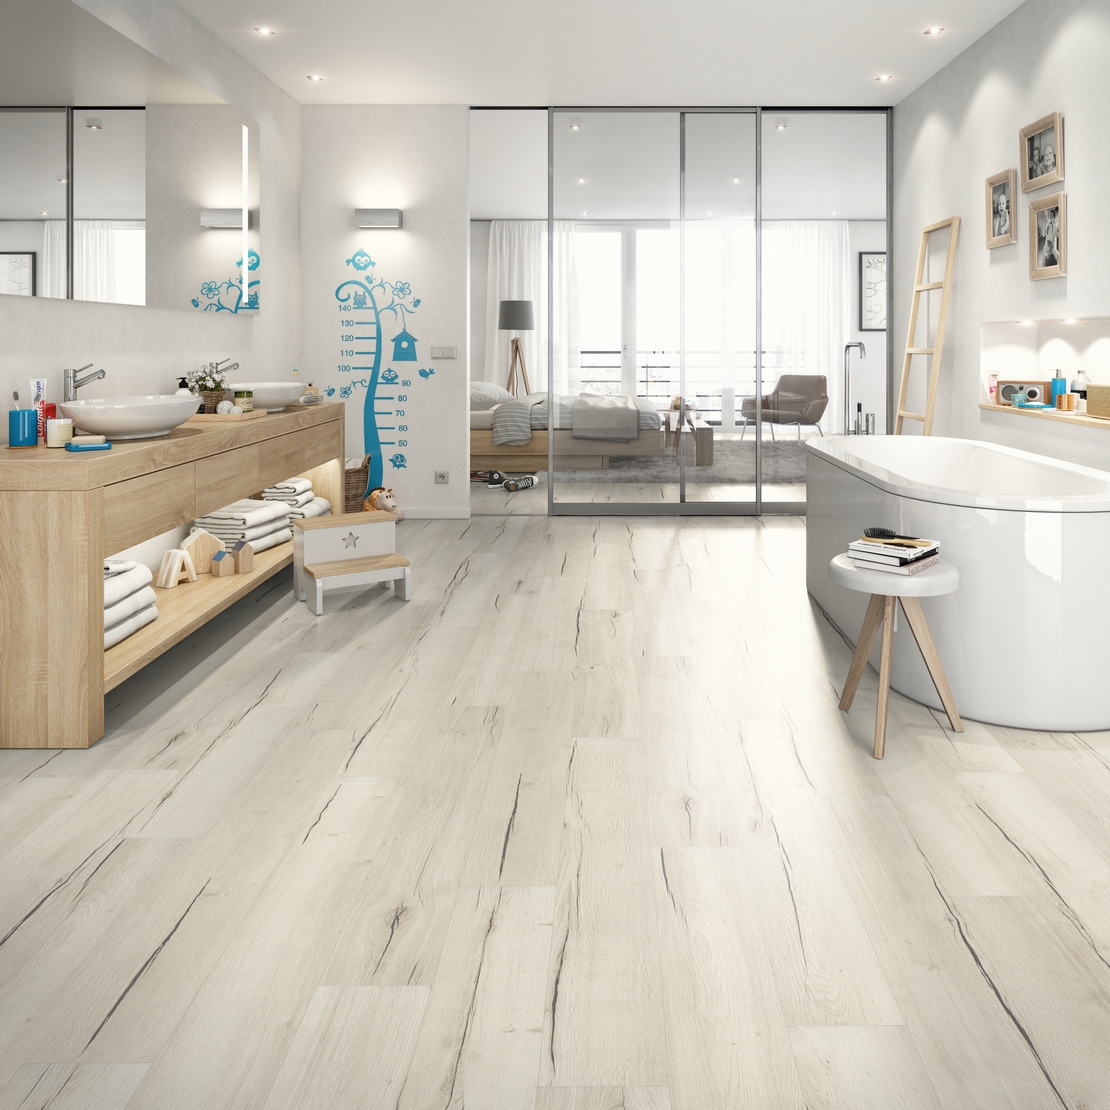 Modernes Badezimmer mit Badewanne. Weiße Holzoptik für einen schönen rustikalen Hauch - Inspirationen Iperceramica